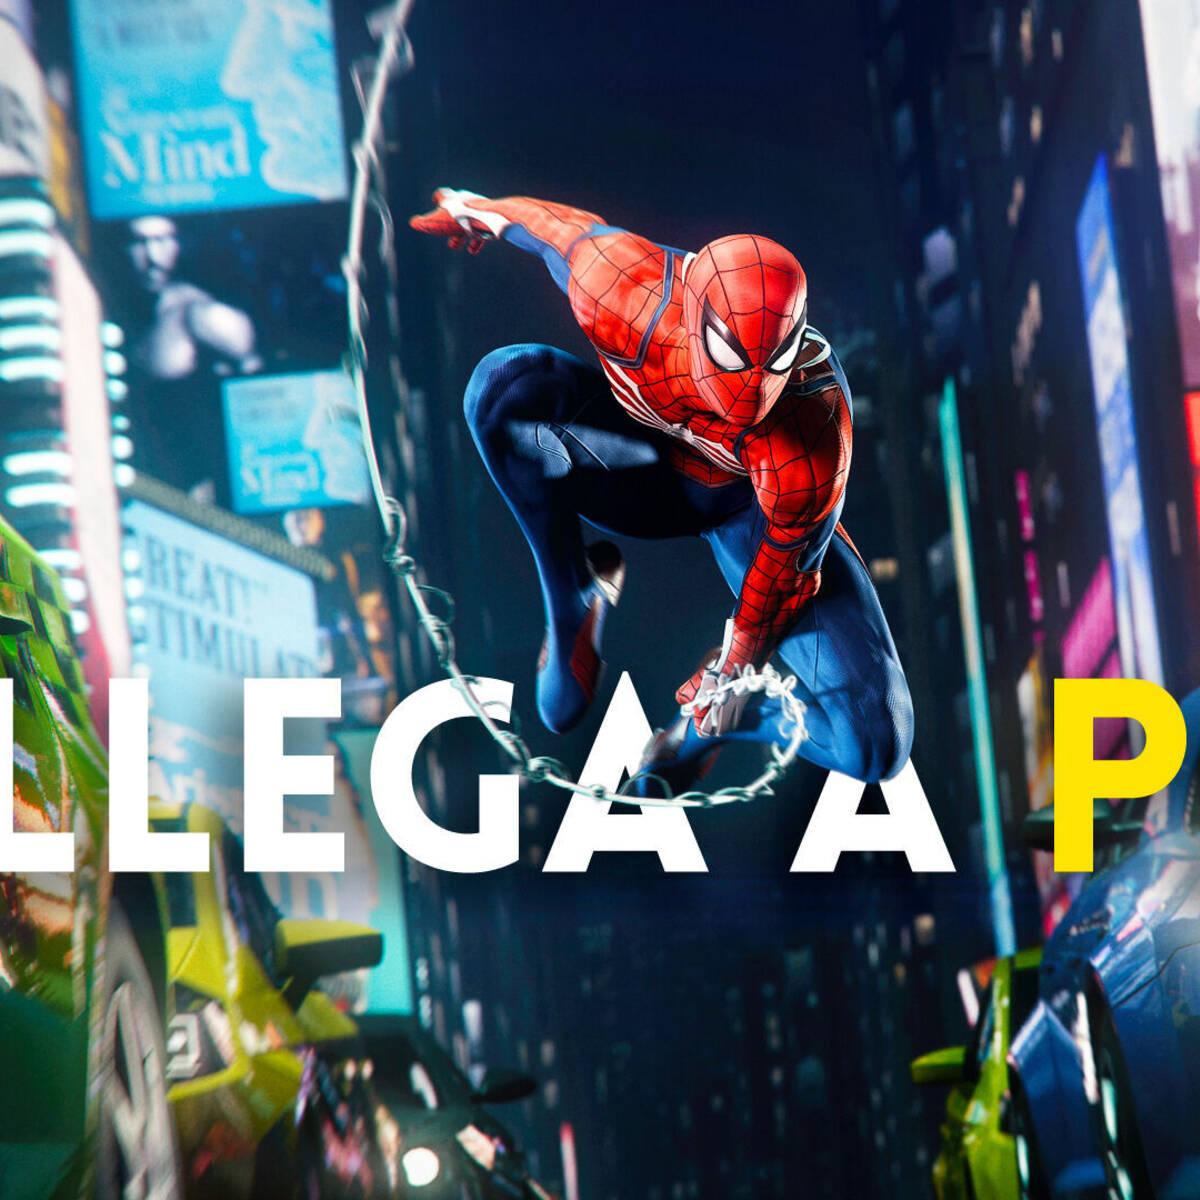 Spiderman Remastered' es el juego perfecto para estrenar la PS5